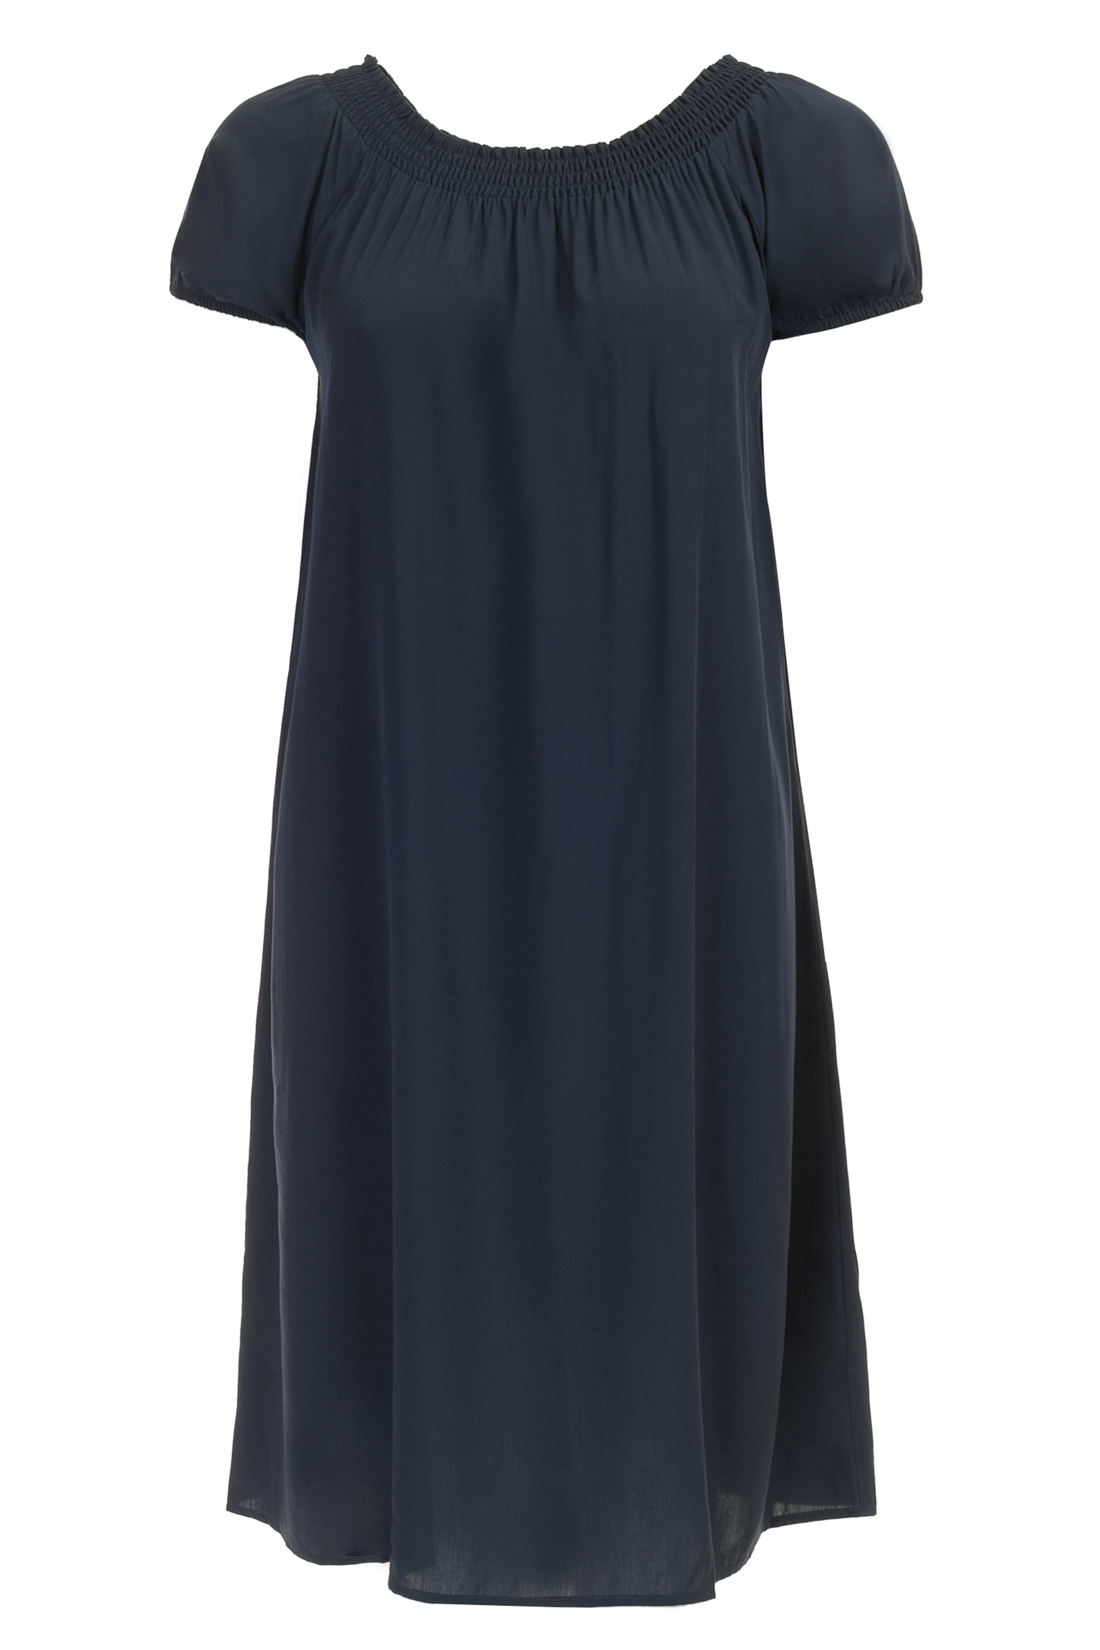 Платье с эластичным верхом (арт. baon B457054), размер L, цвет синий Платье с эластичным верхом (арт. baon B457054) - фото 4